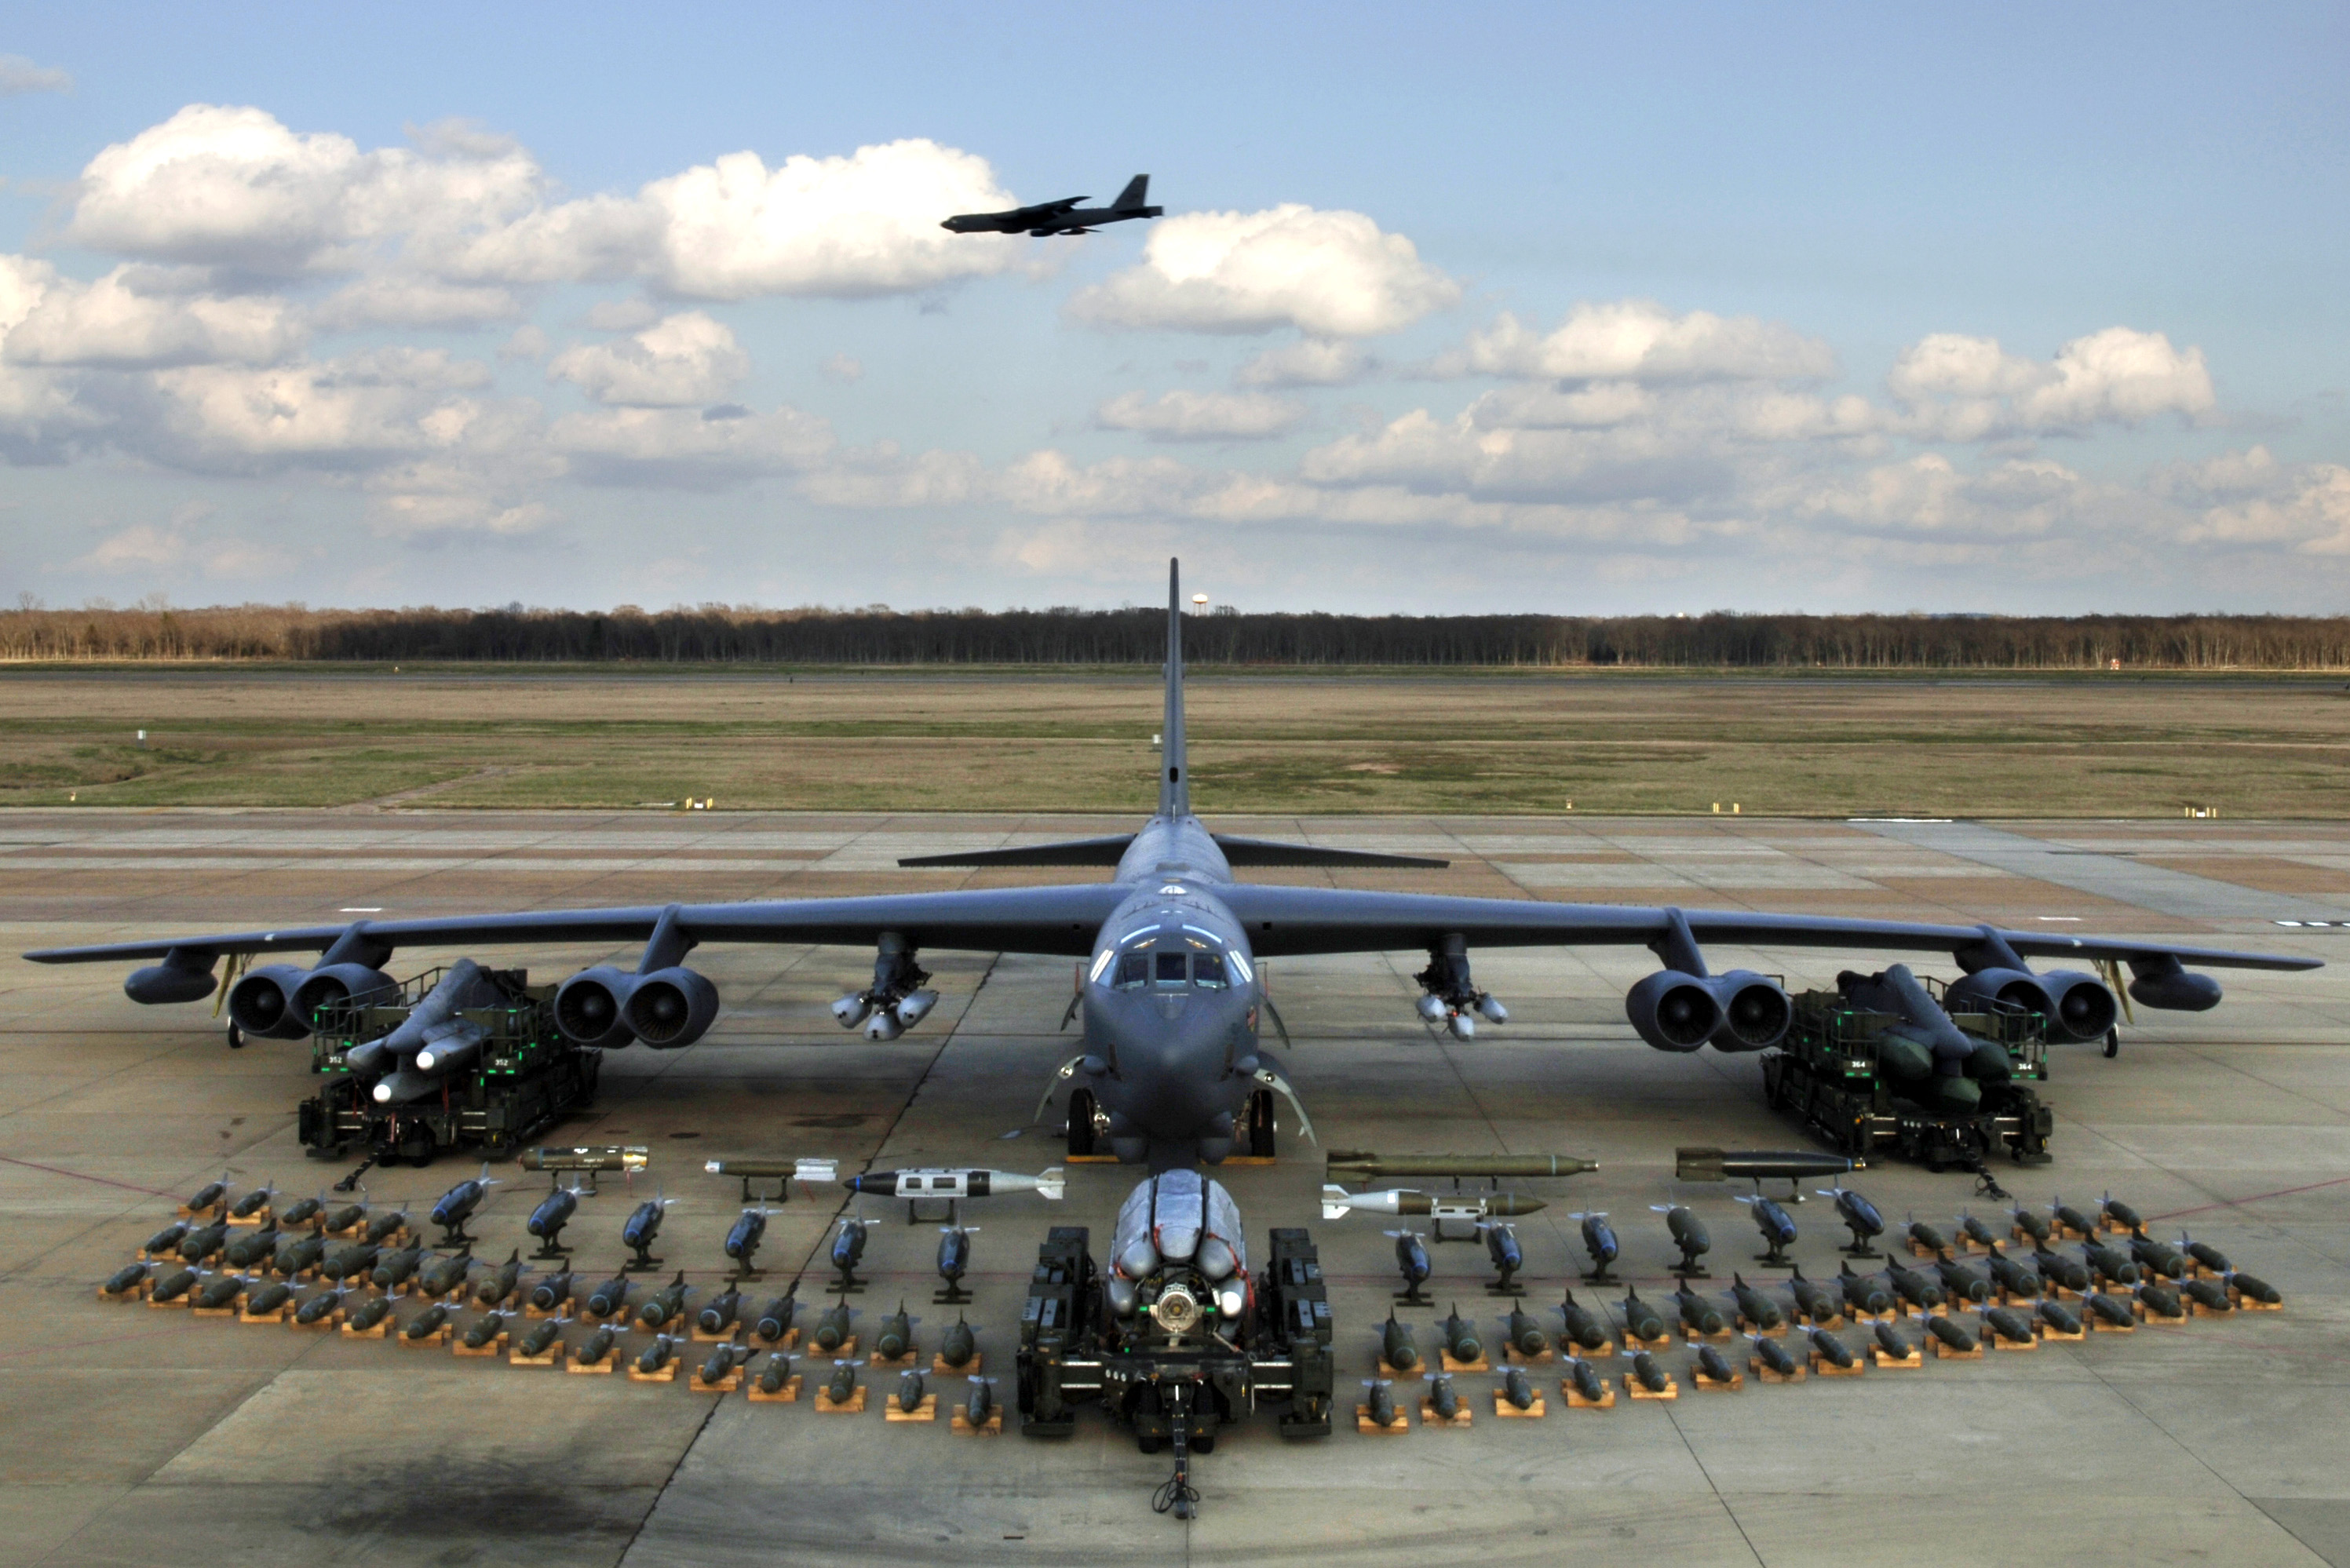 Po raz pierwszy w historii Stany Zjednoczone przekazały bombowce nuklearne B-52 Stratofortress pod dowództwo NATO.